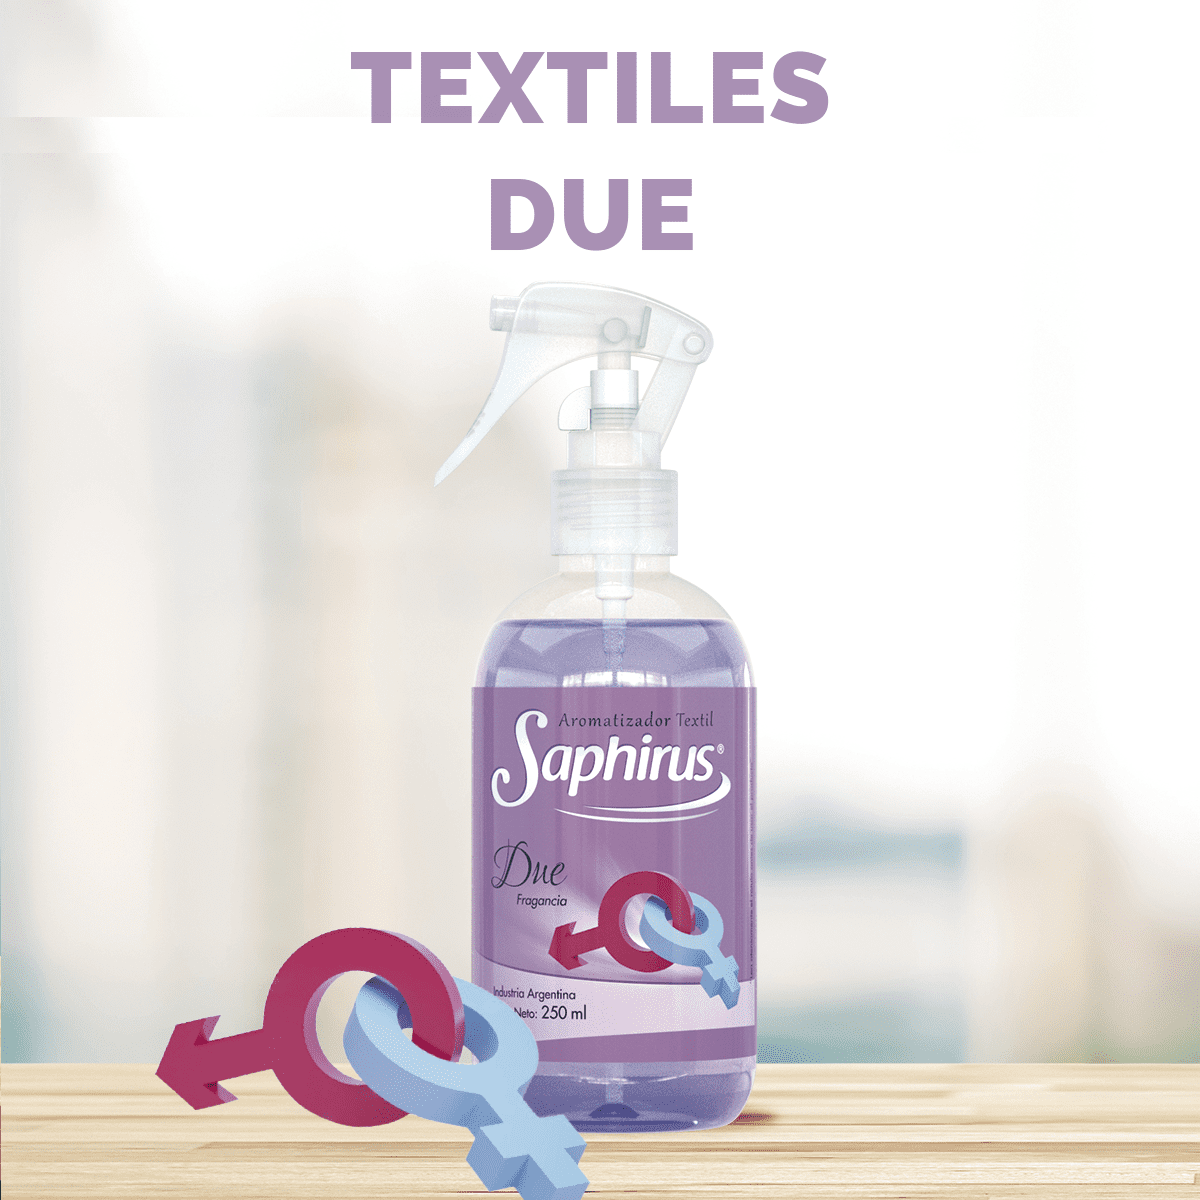 Saphirus Textil Due